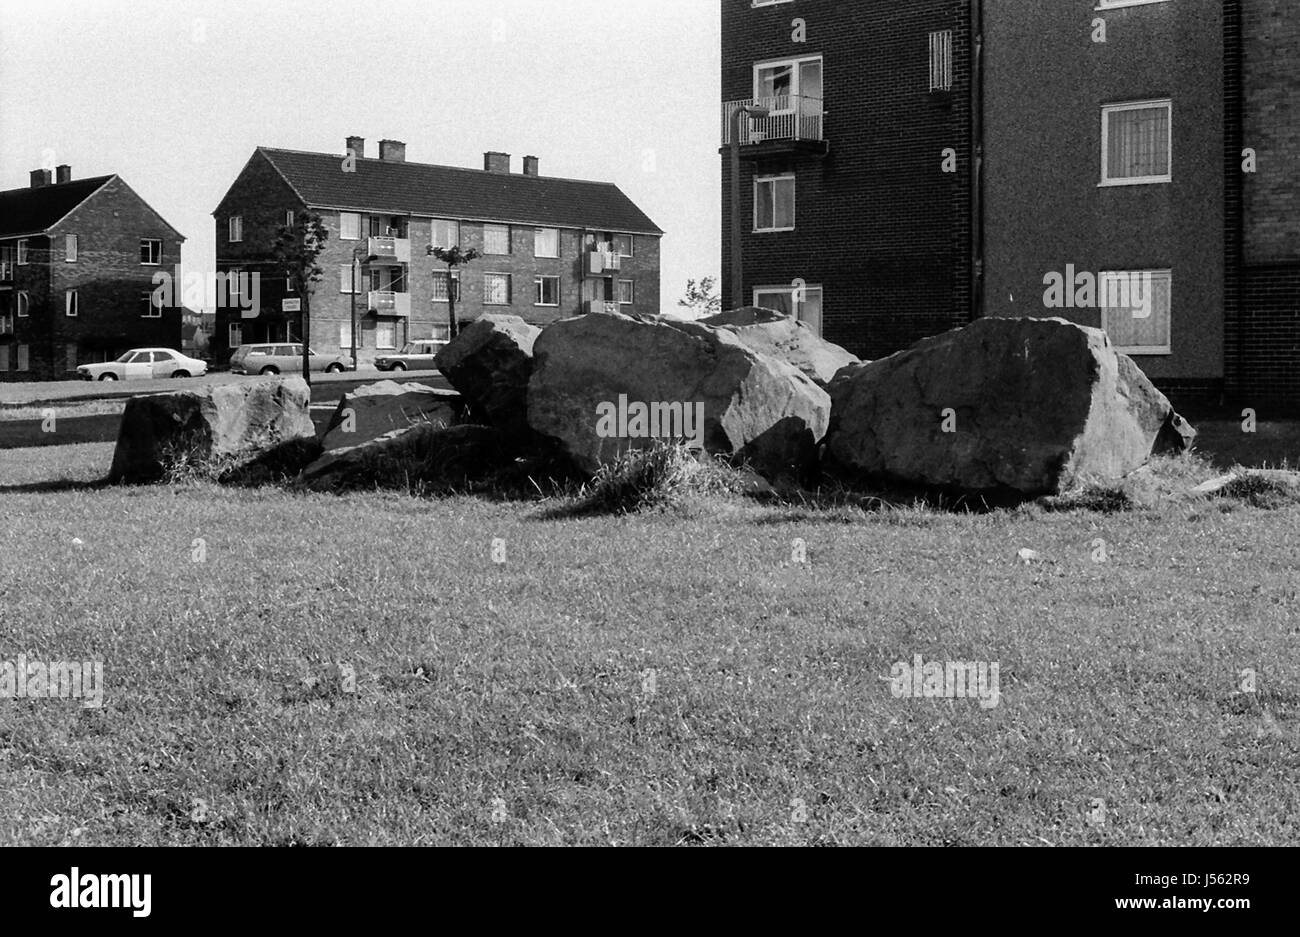 The Crescent, Buttershaw Estate, Bradford, West Yorkshire, Reino Unido. Un plan de vivienda en el consejo de la Administración local de 1950. Las imágenes en blanco y negro de 1982 retratan el entorno sucio de un típico hundimiento de la clase obrera del norte de Inglaterra. Foto de stock